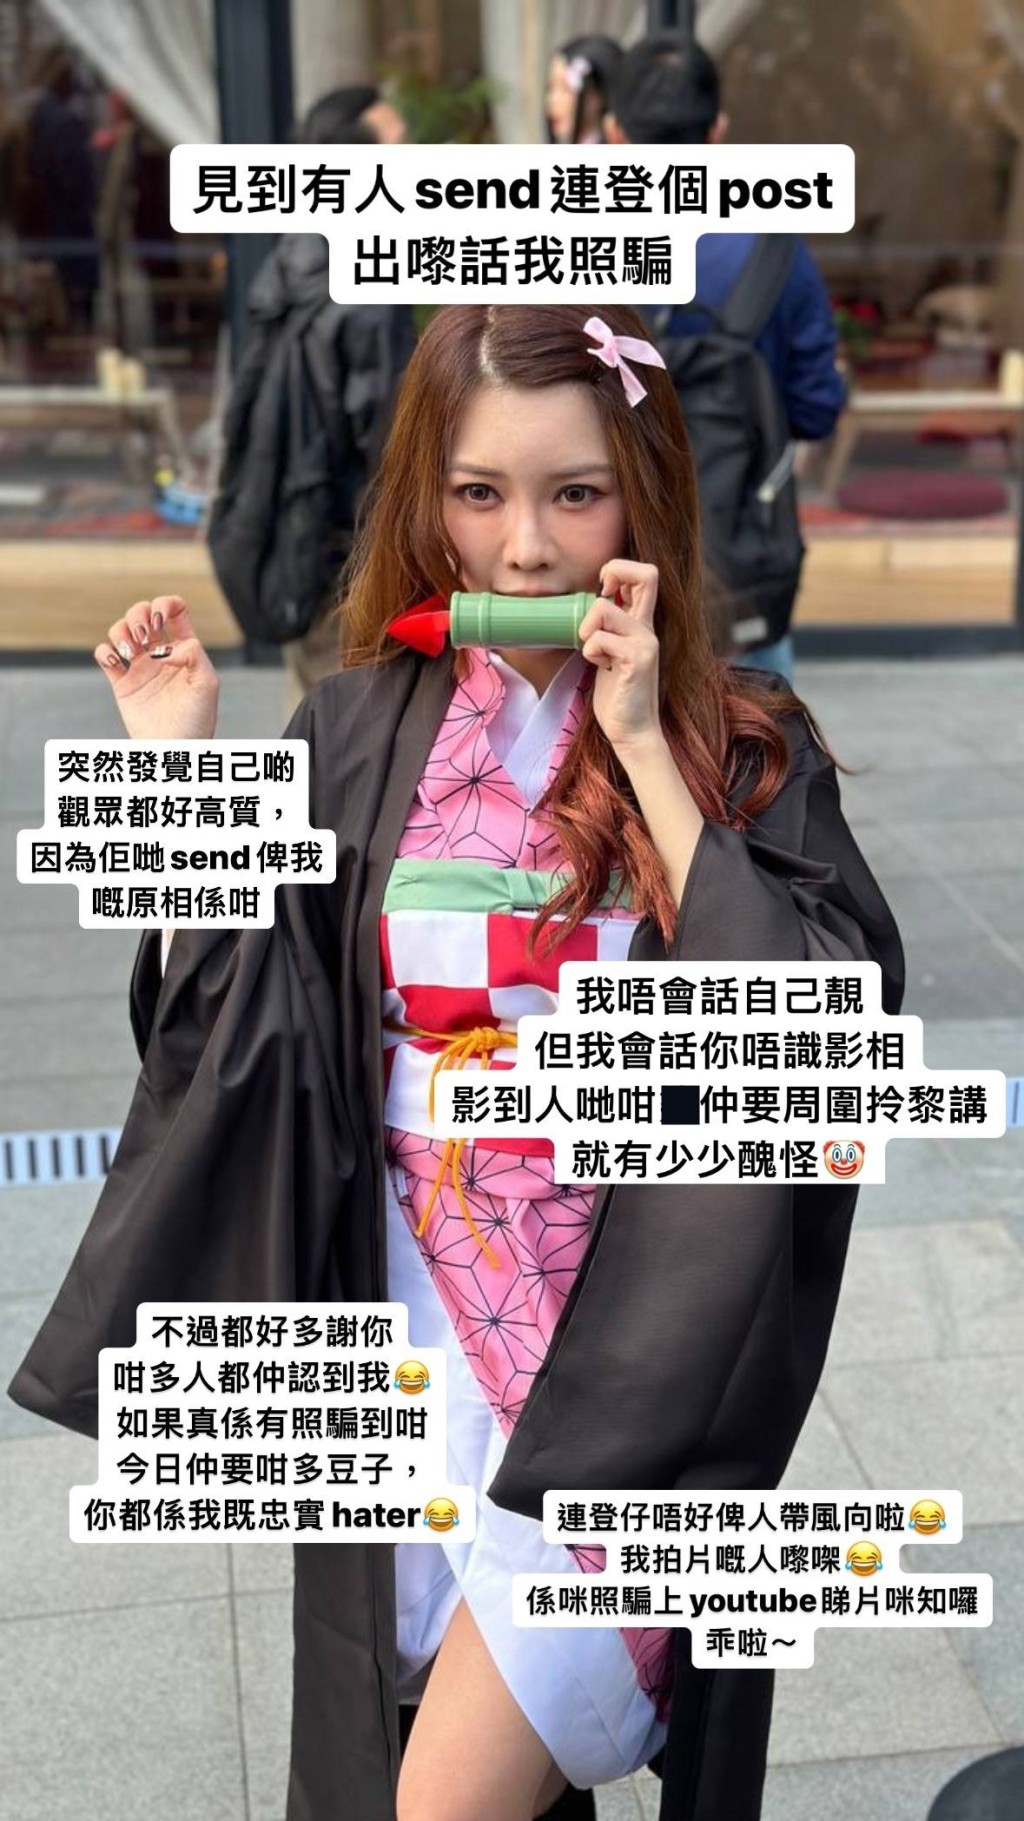 赵咏瑶转发网民的照片回应。